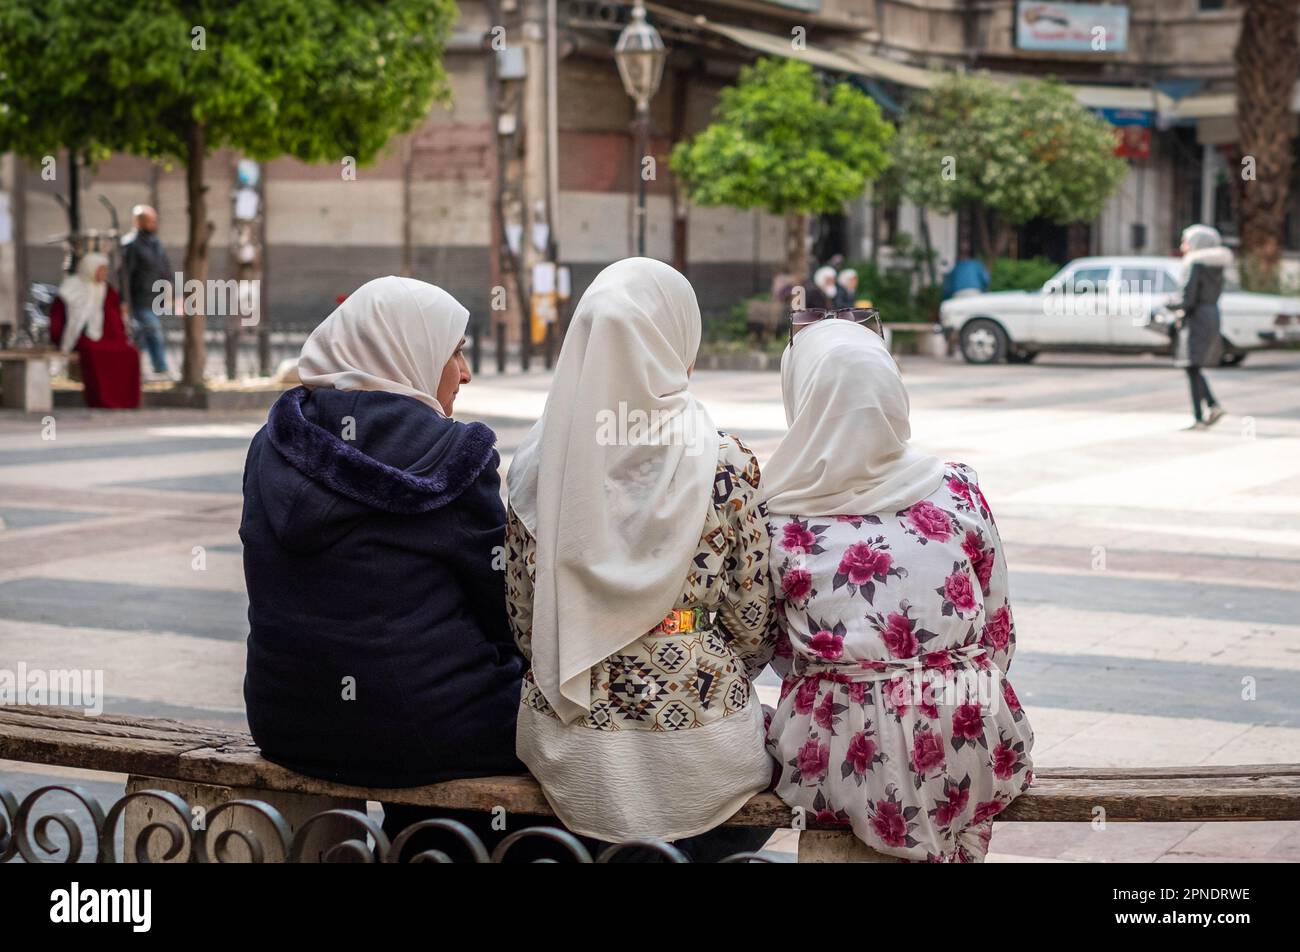 Drei muslimische Frauen oder Mädchen mit Kopftuch/Hidschab, die auf einer Bank auf der Straße sitzen Stockfoto